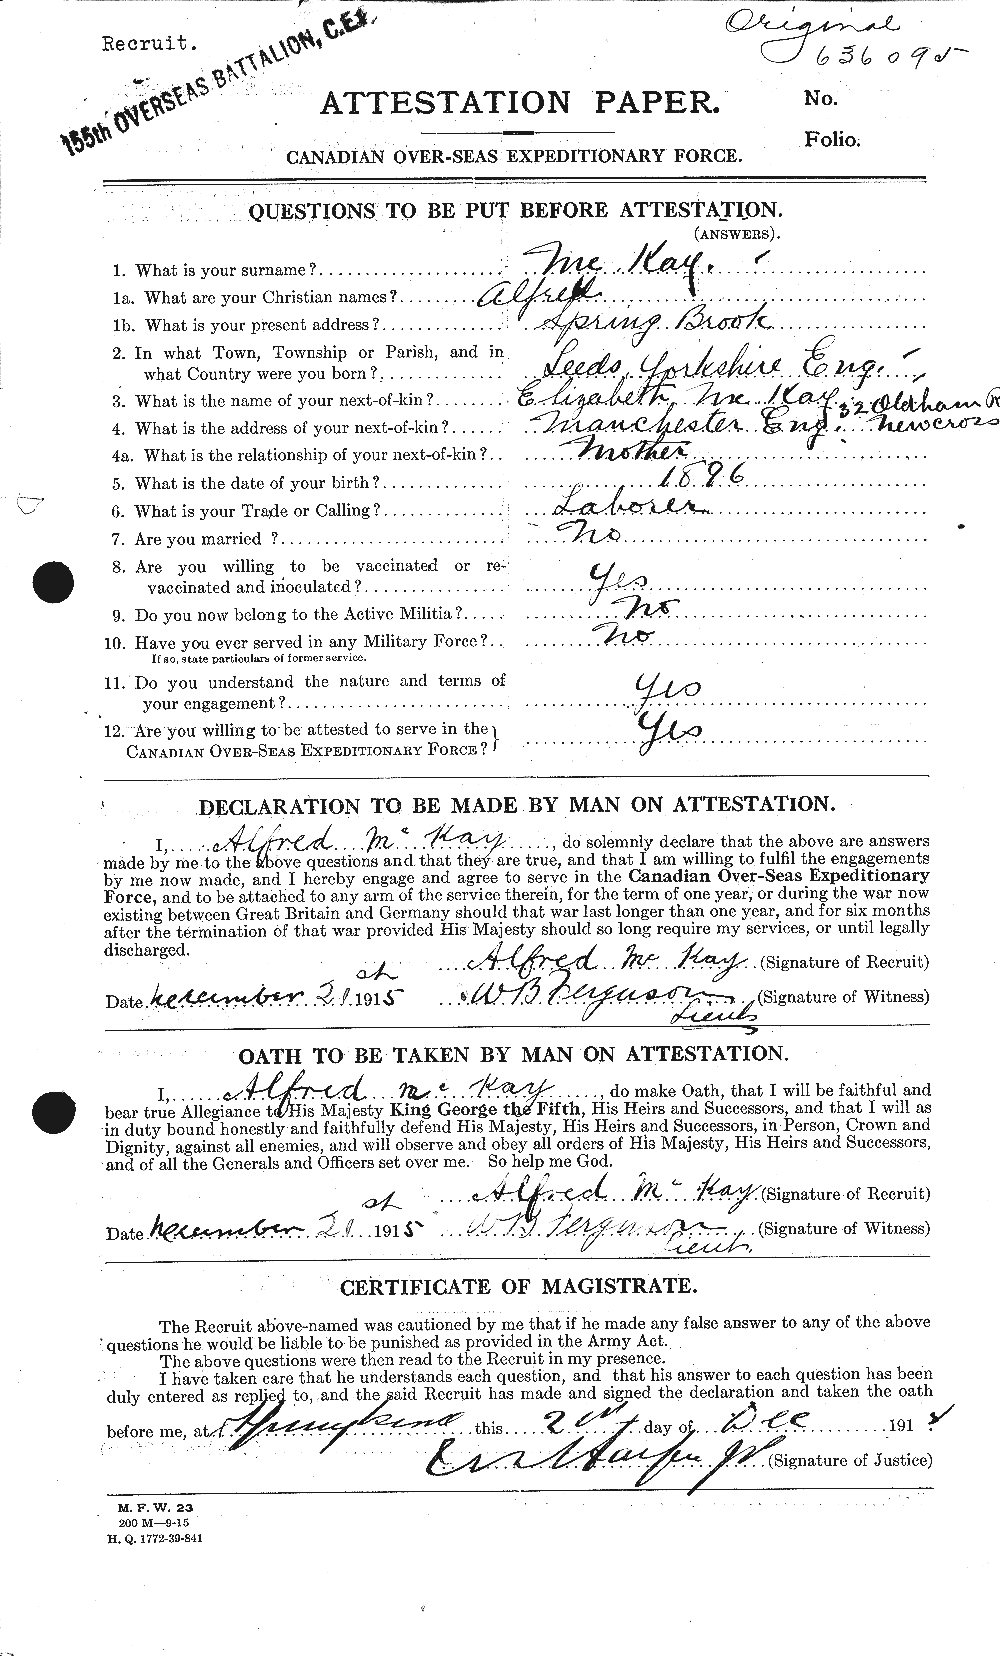 Dossiers du Personnel de la Première Guerre mondiale - CEC 530956a